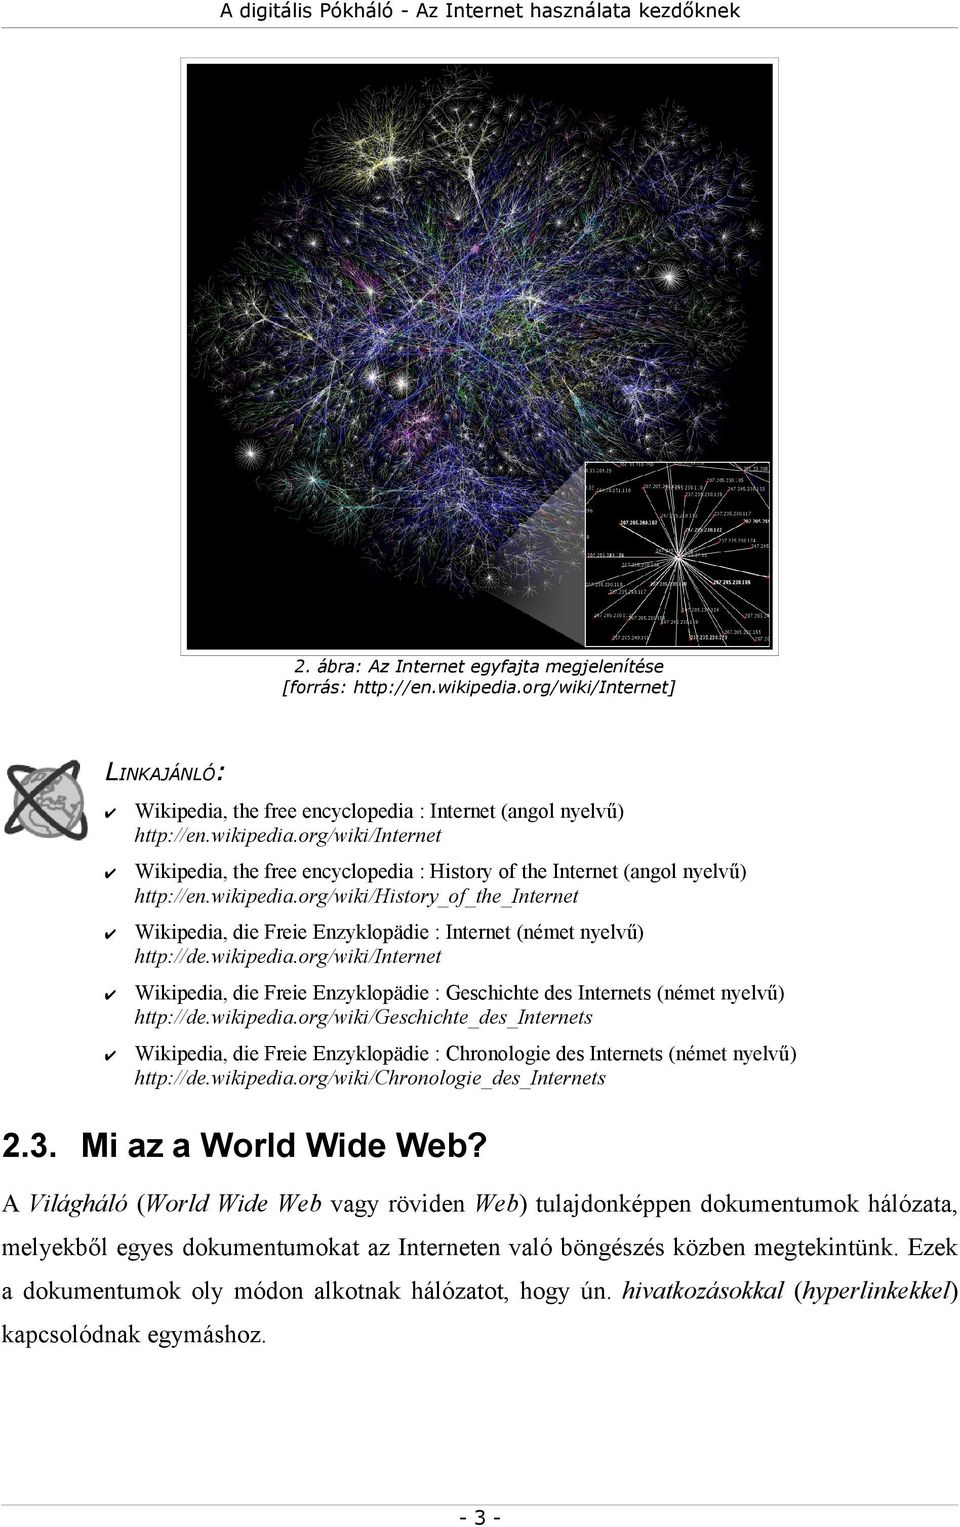 wikipedia.org/wiki/geschichte_des_internets Wikipedia, die Freie Enzyklopädie : Chronologie des Internets (német nyelvű) http://de.wikipedia.org/wiki/chronologie_des_internets 2.3.